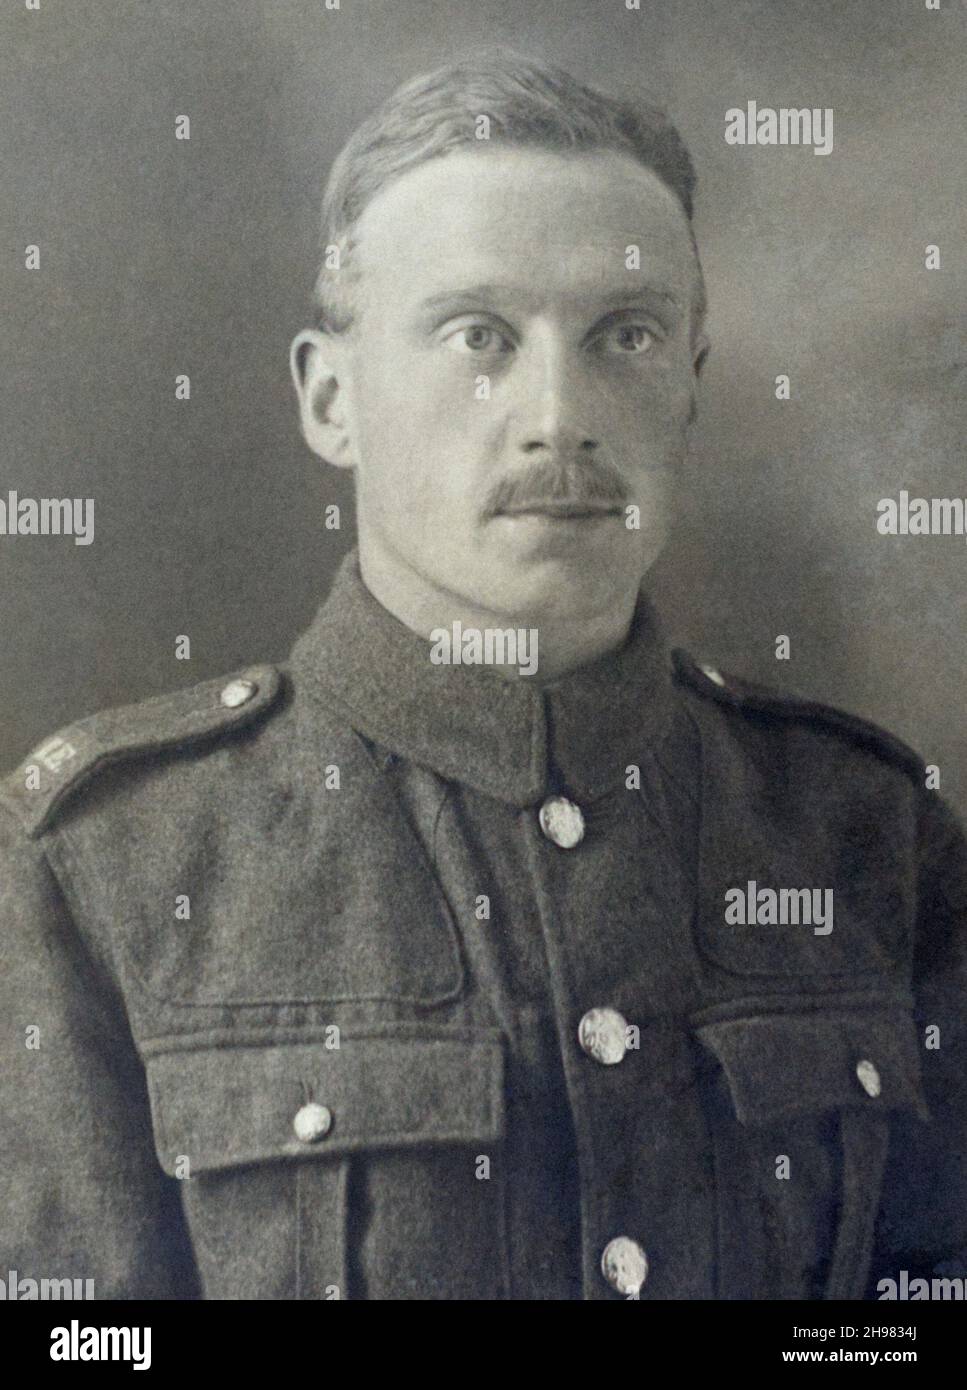 Un'immagine della prima Guerra Mondiale di un soldato britannico, un Sapper nei Royal Engineers. Con spalline in tessuto. Foto Stock